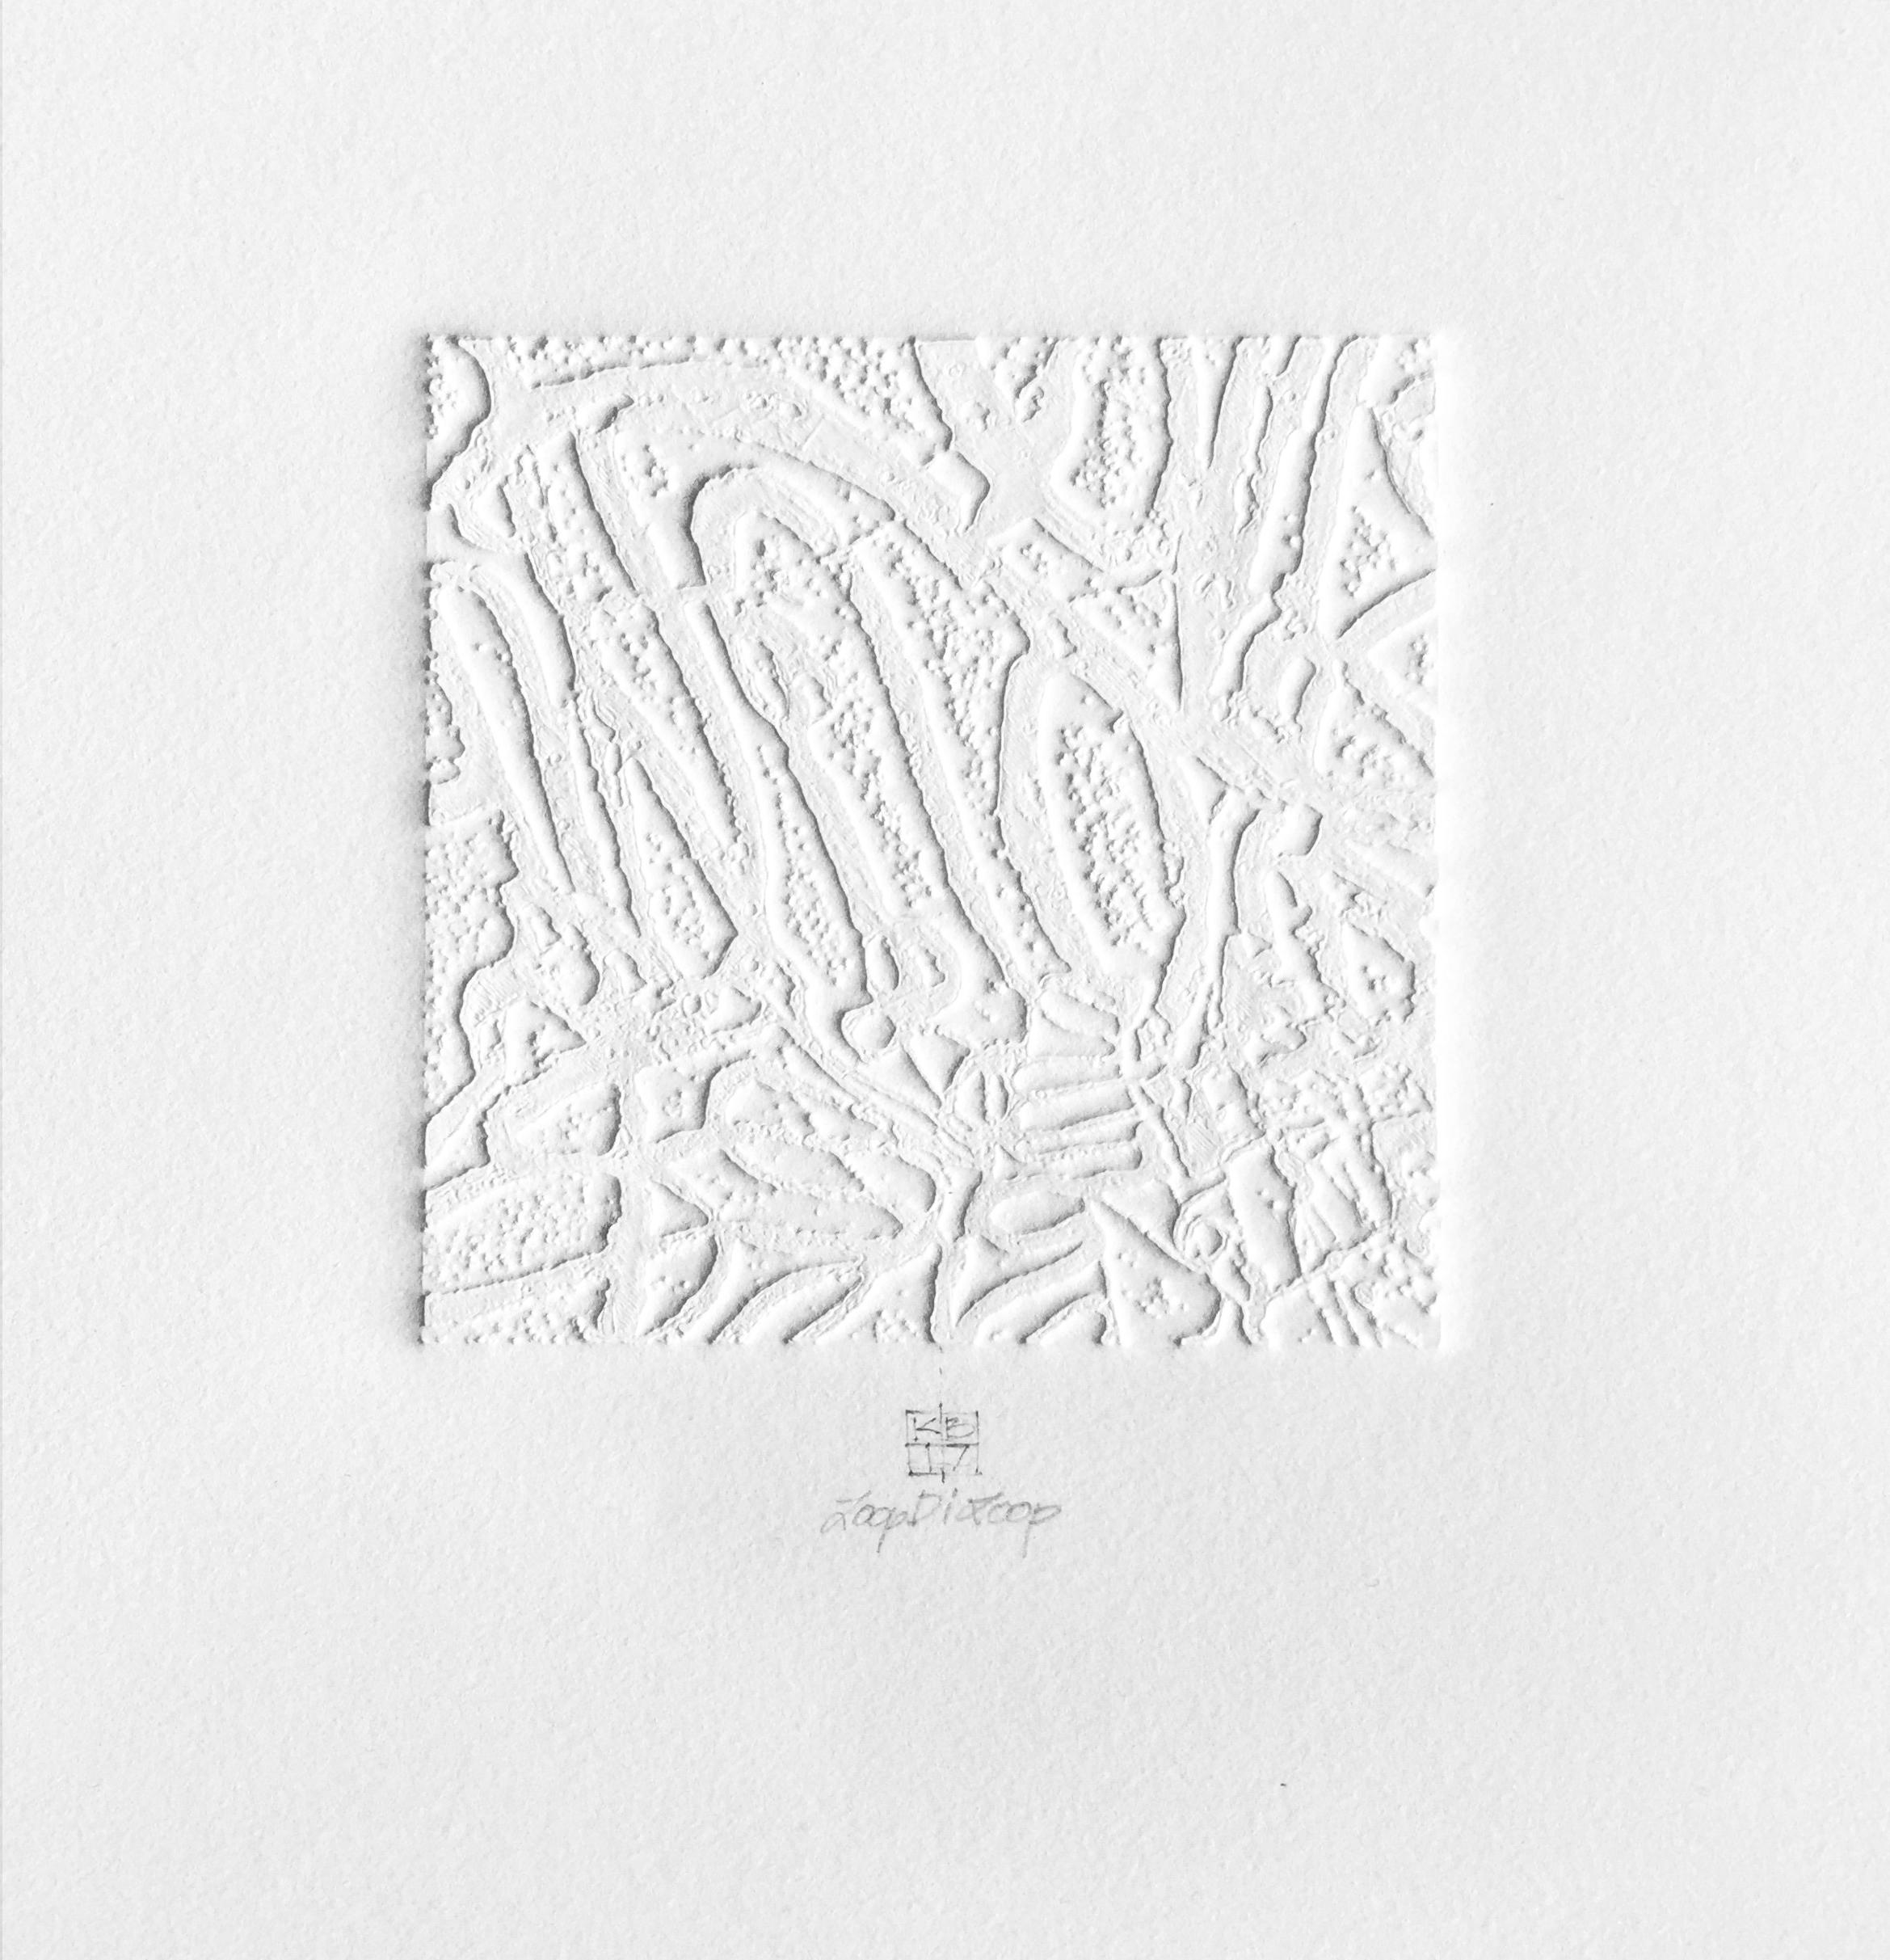 Karin Bruckner Abstract Print - LoopDiLoop 1, mixed media monoprint on paper, white, abstract and minimal